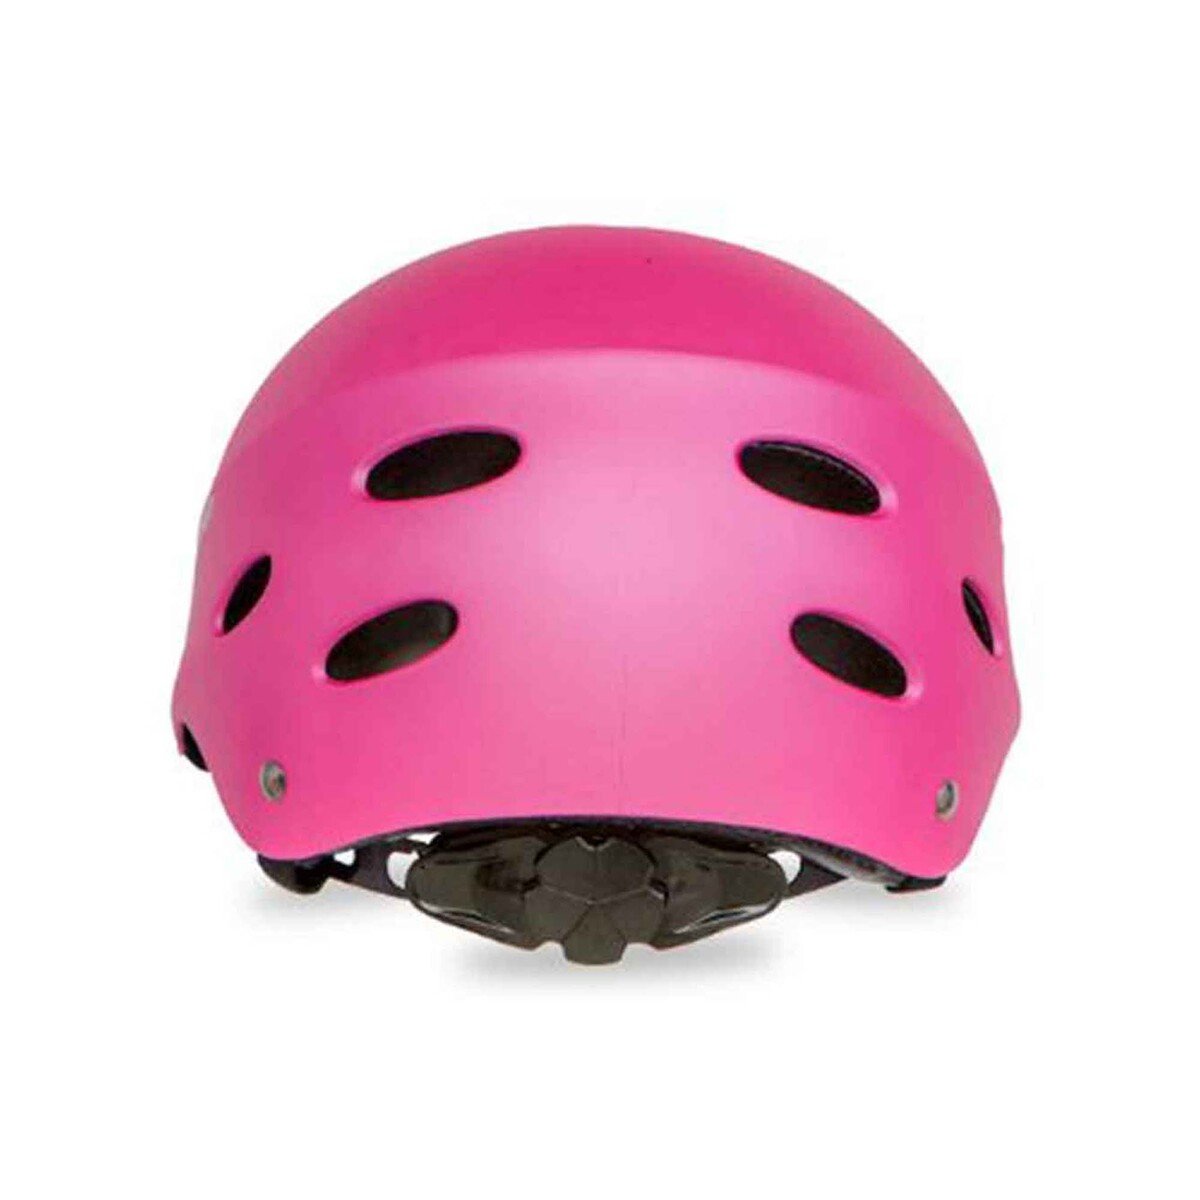 Spartan Bicycles Helmet Satin Pink SP-9015